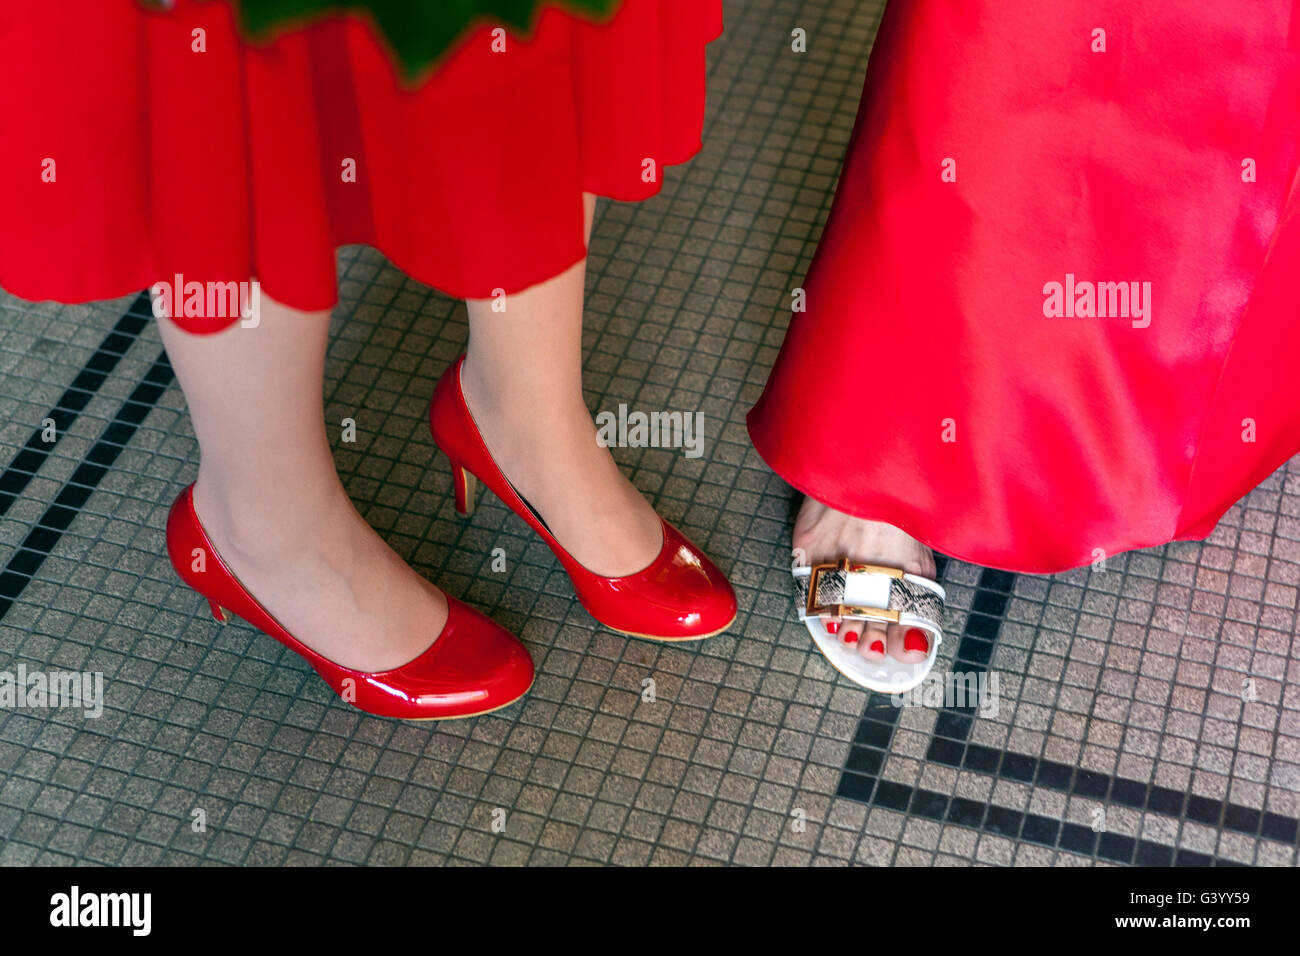 La Tacones zapatos rojos, bajo sección Fotografía de stock - Alamy